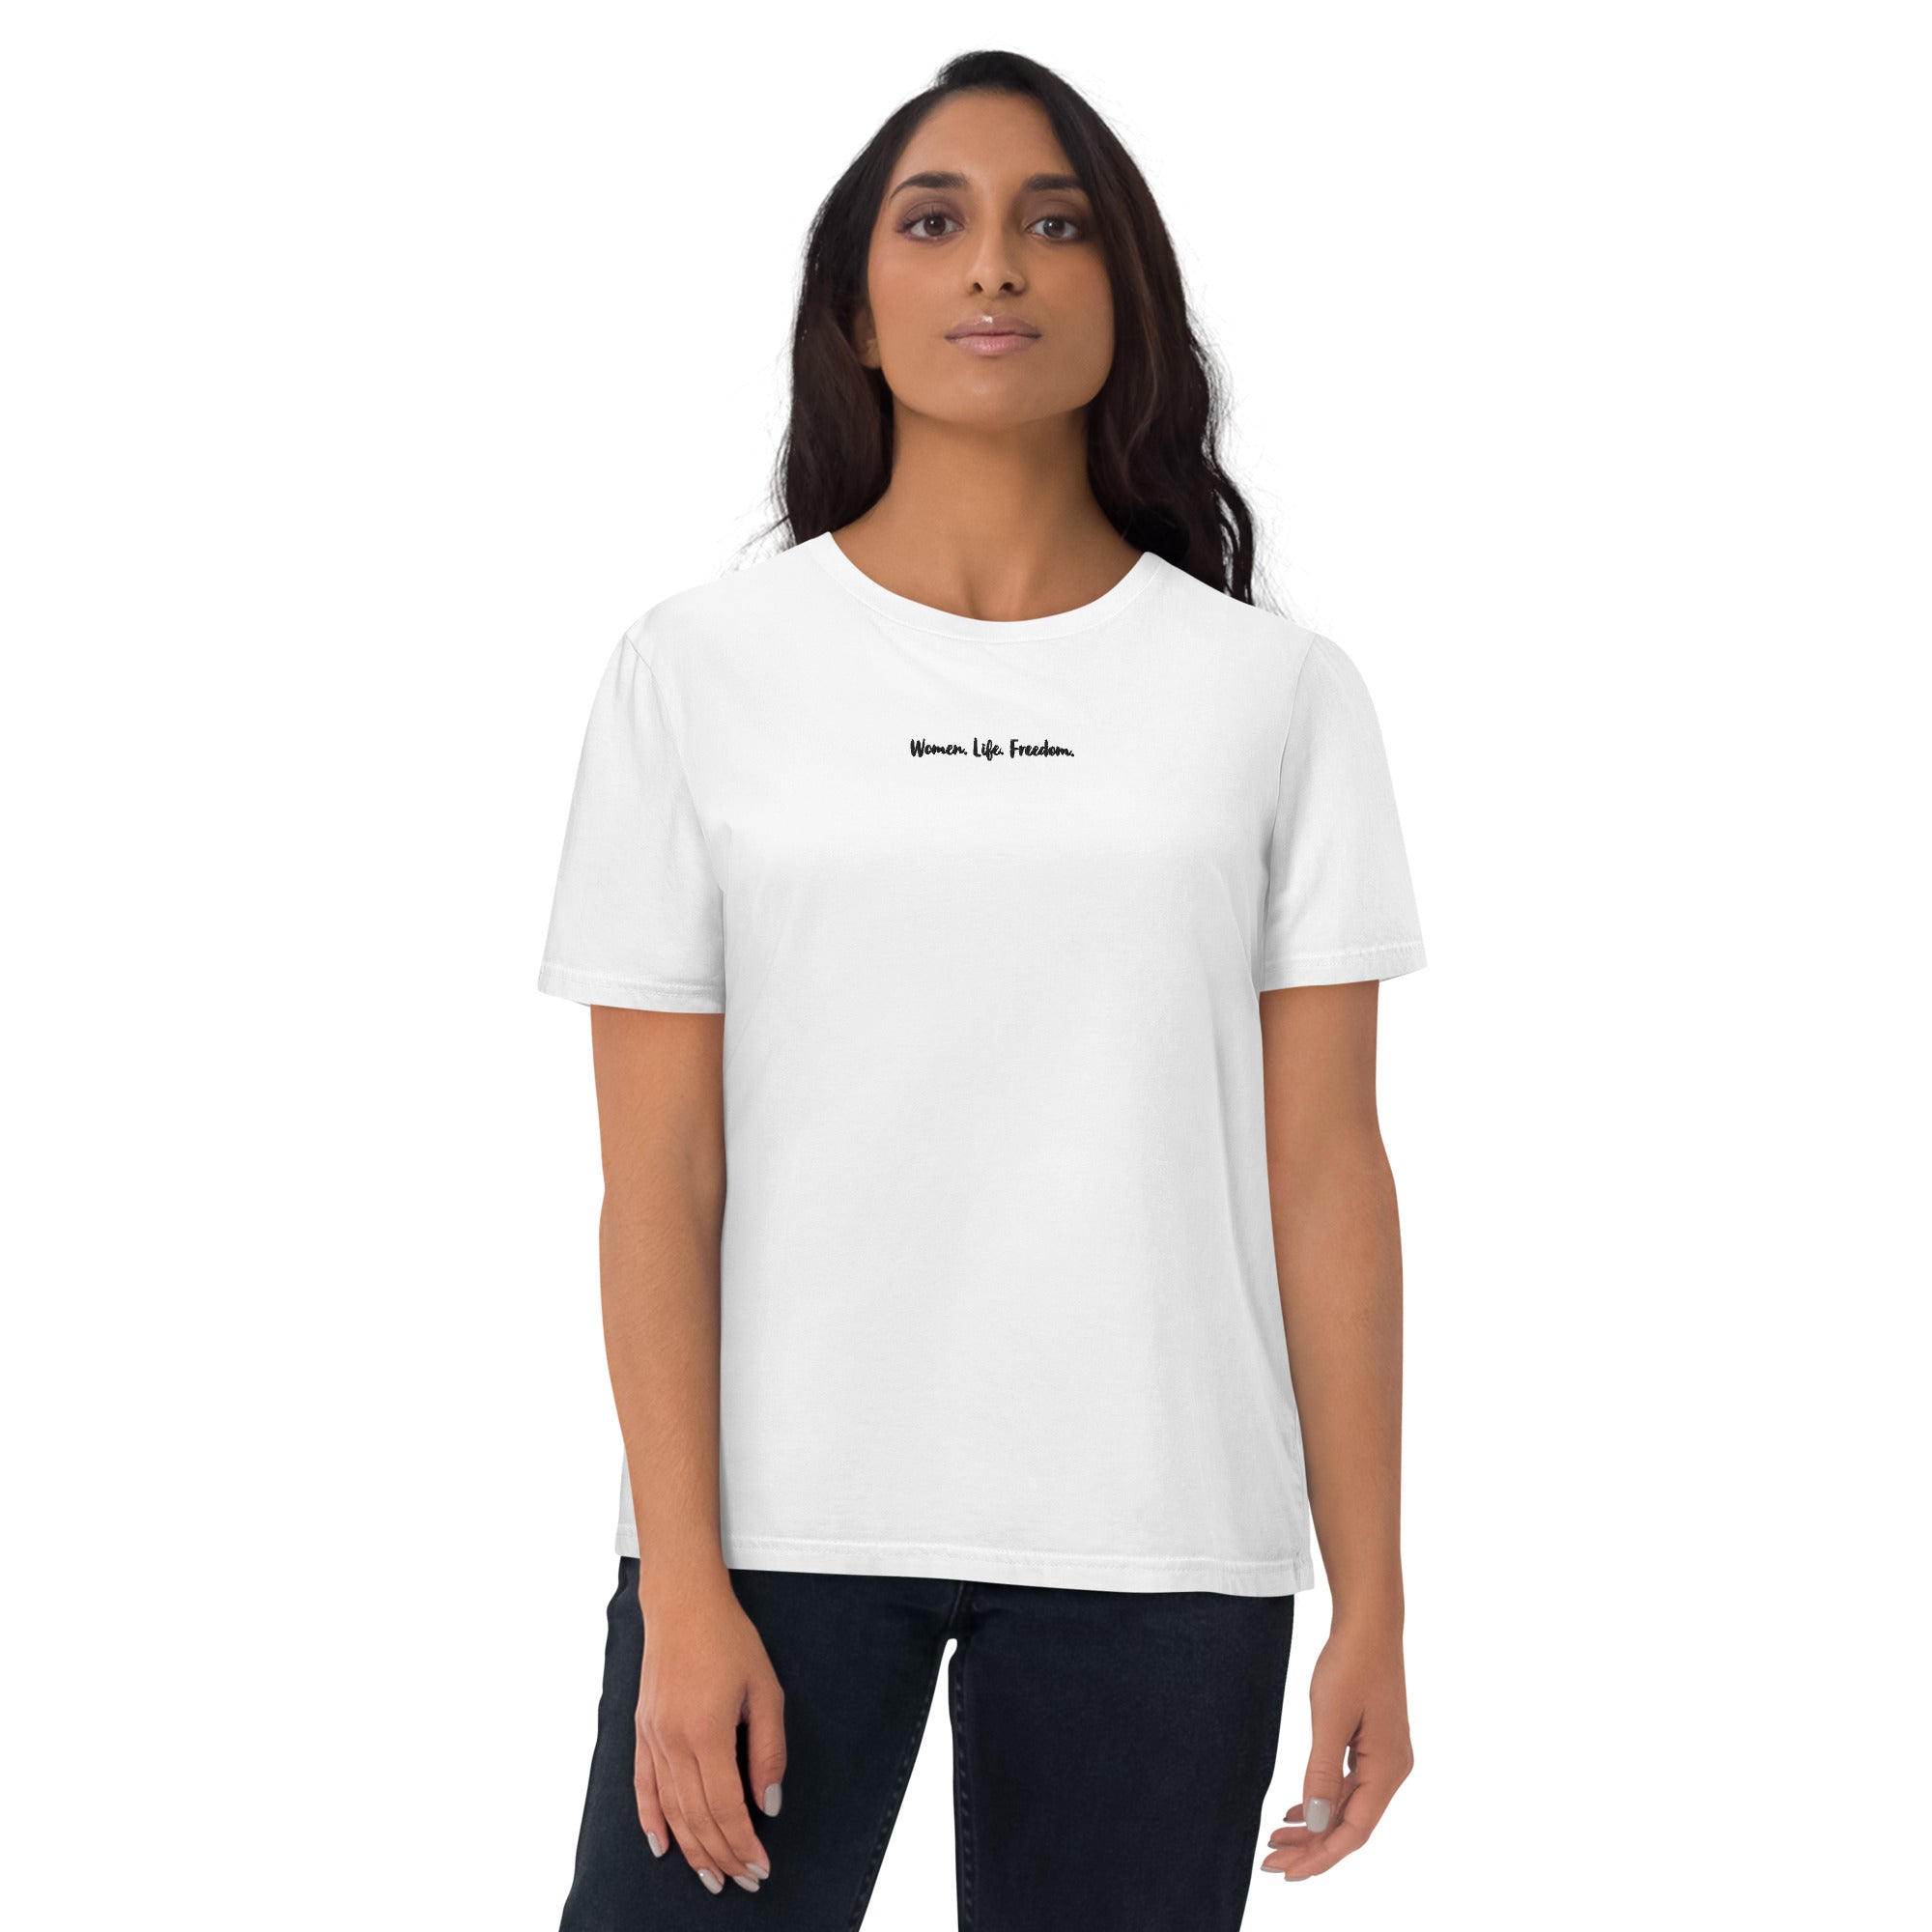 Girl Almighty Shirt Feminist Girl Power Feminism Girl Boss T-shirt – Sunray  Clothing